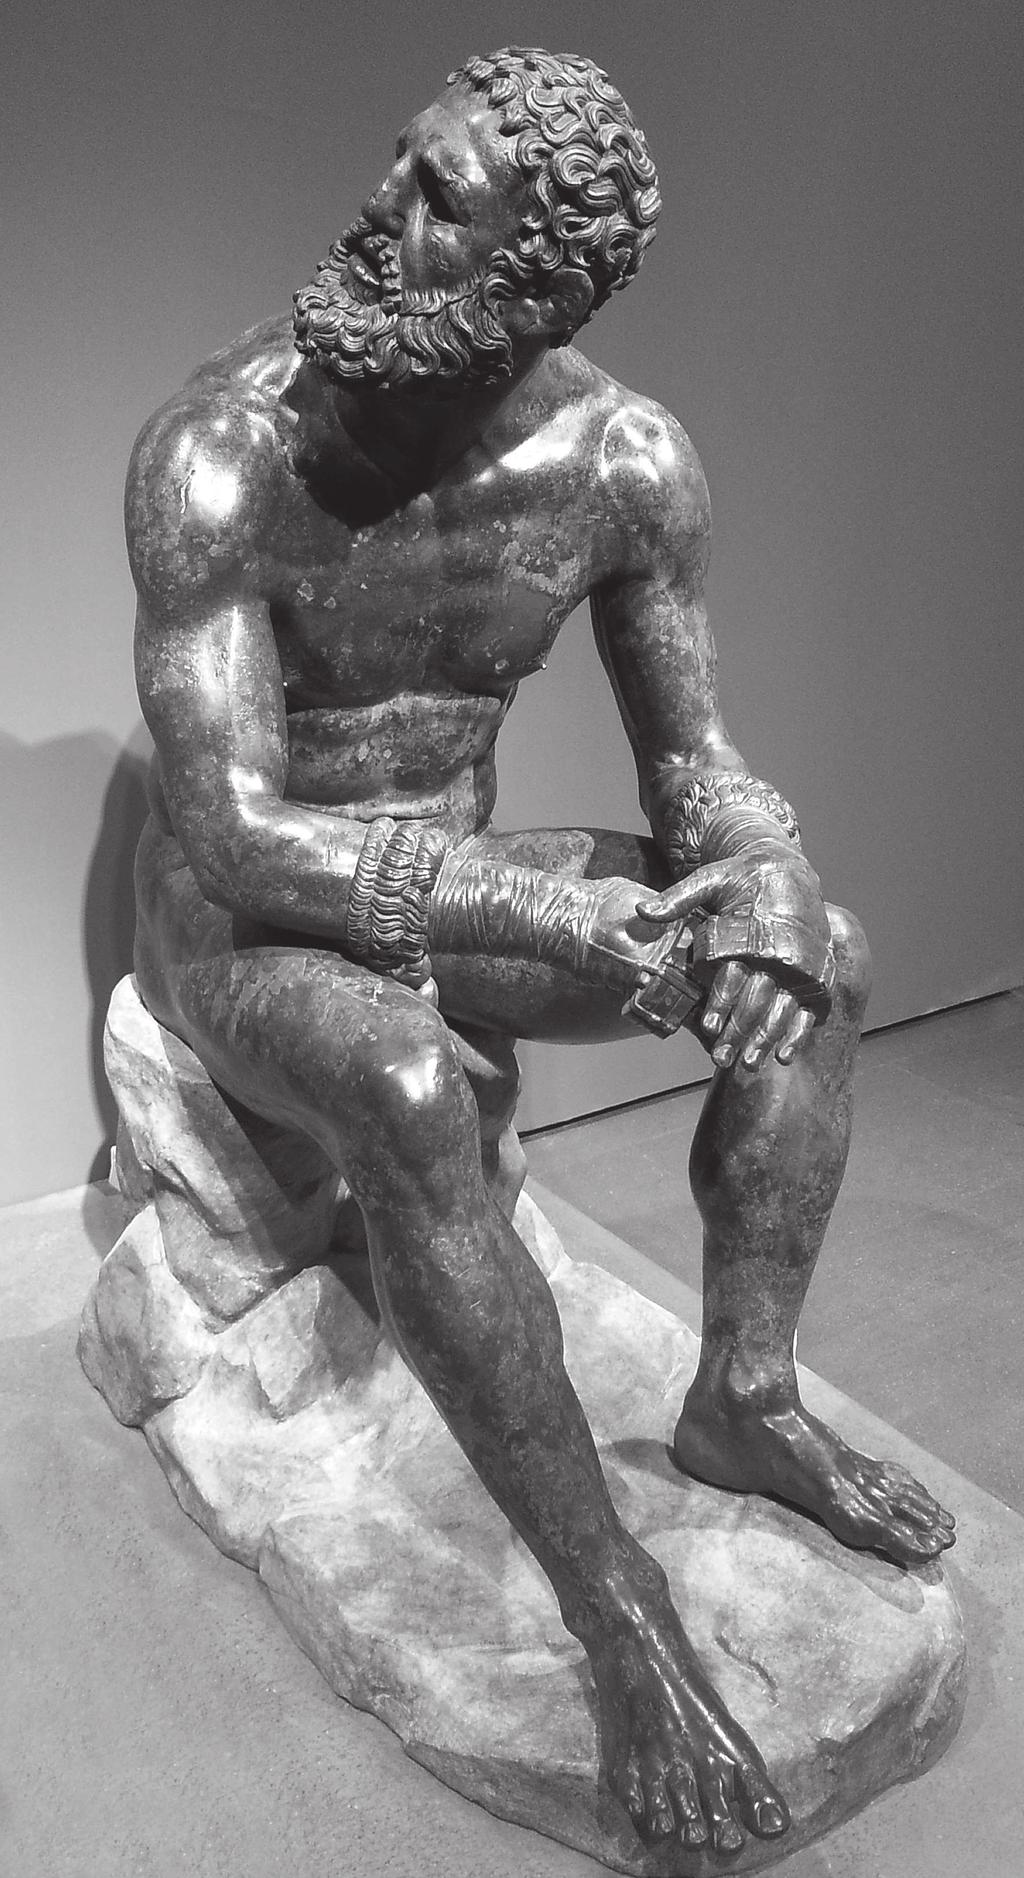 Photo Patrice Cartier Gusman/Leemage Le Pugiliste des Thermes, sculpture en bronze d Apollinius d Athènes (I er siècle apr. J.-C.), Rome (Italie), Musée national de Rome.